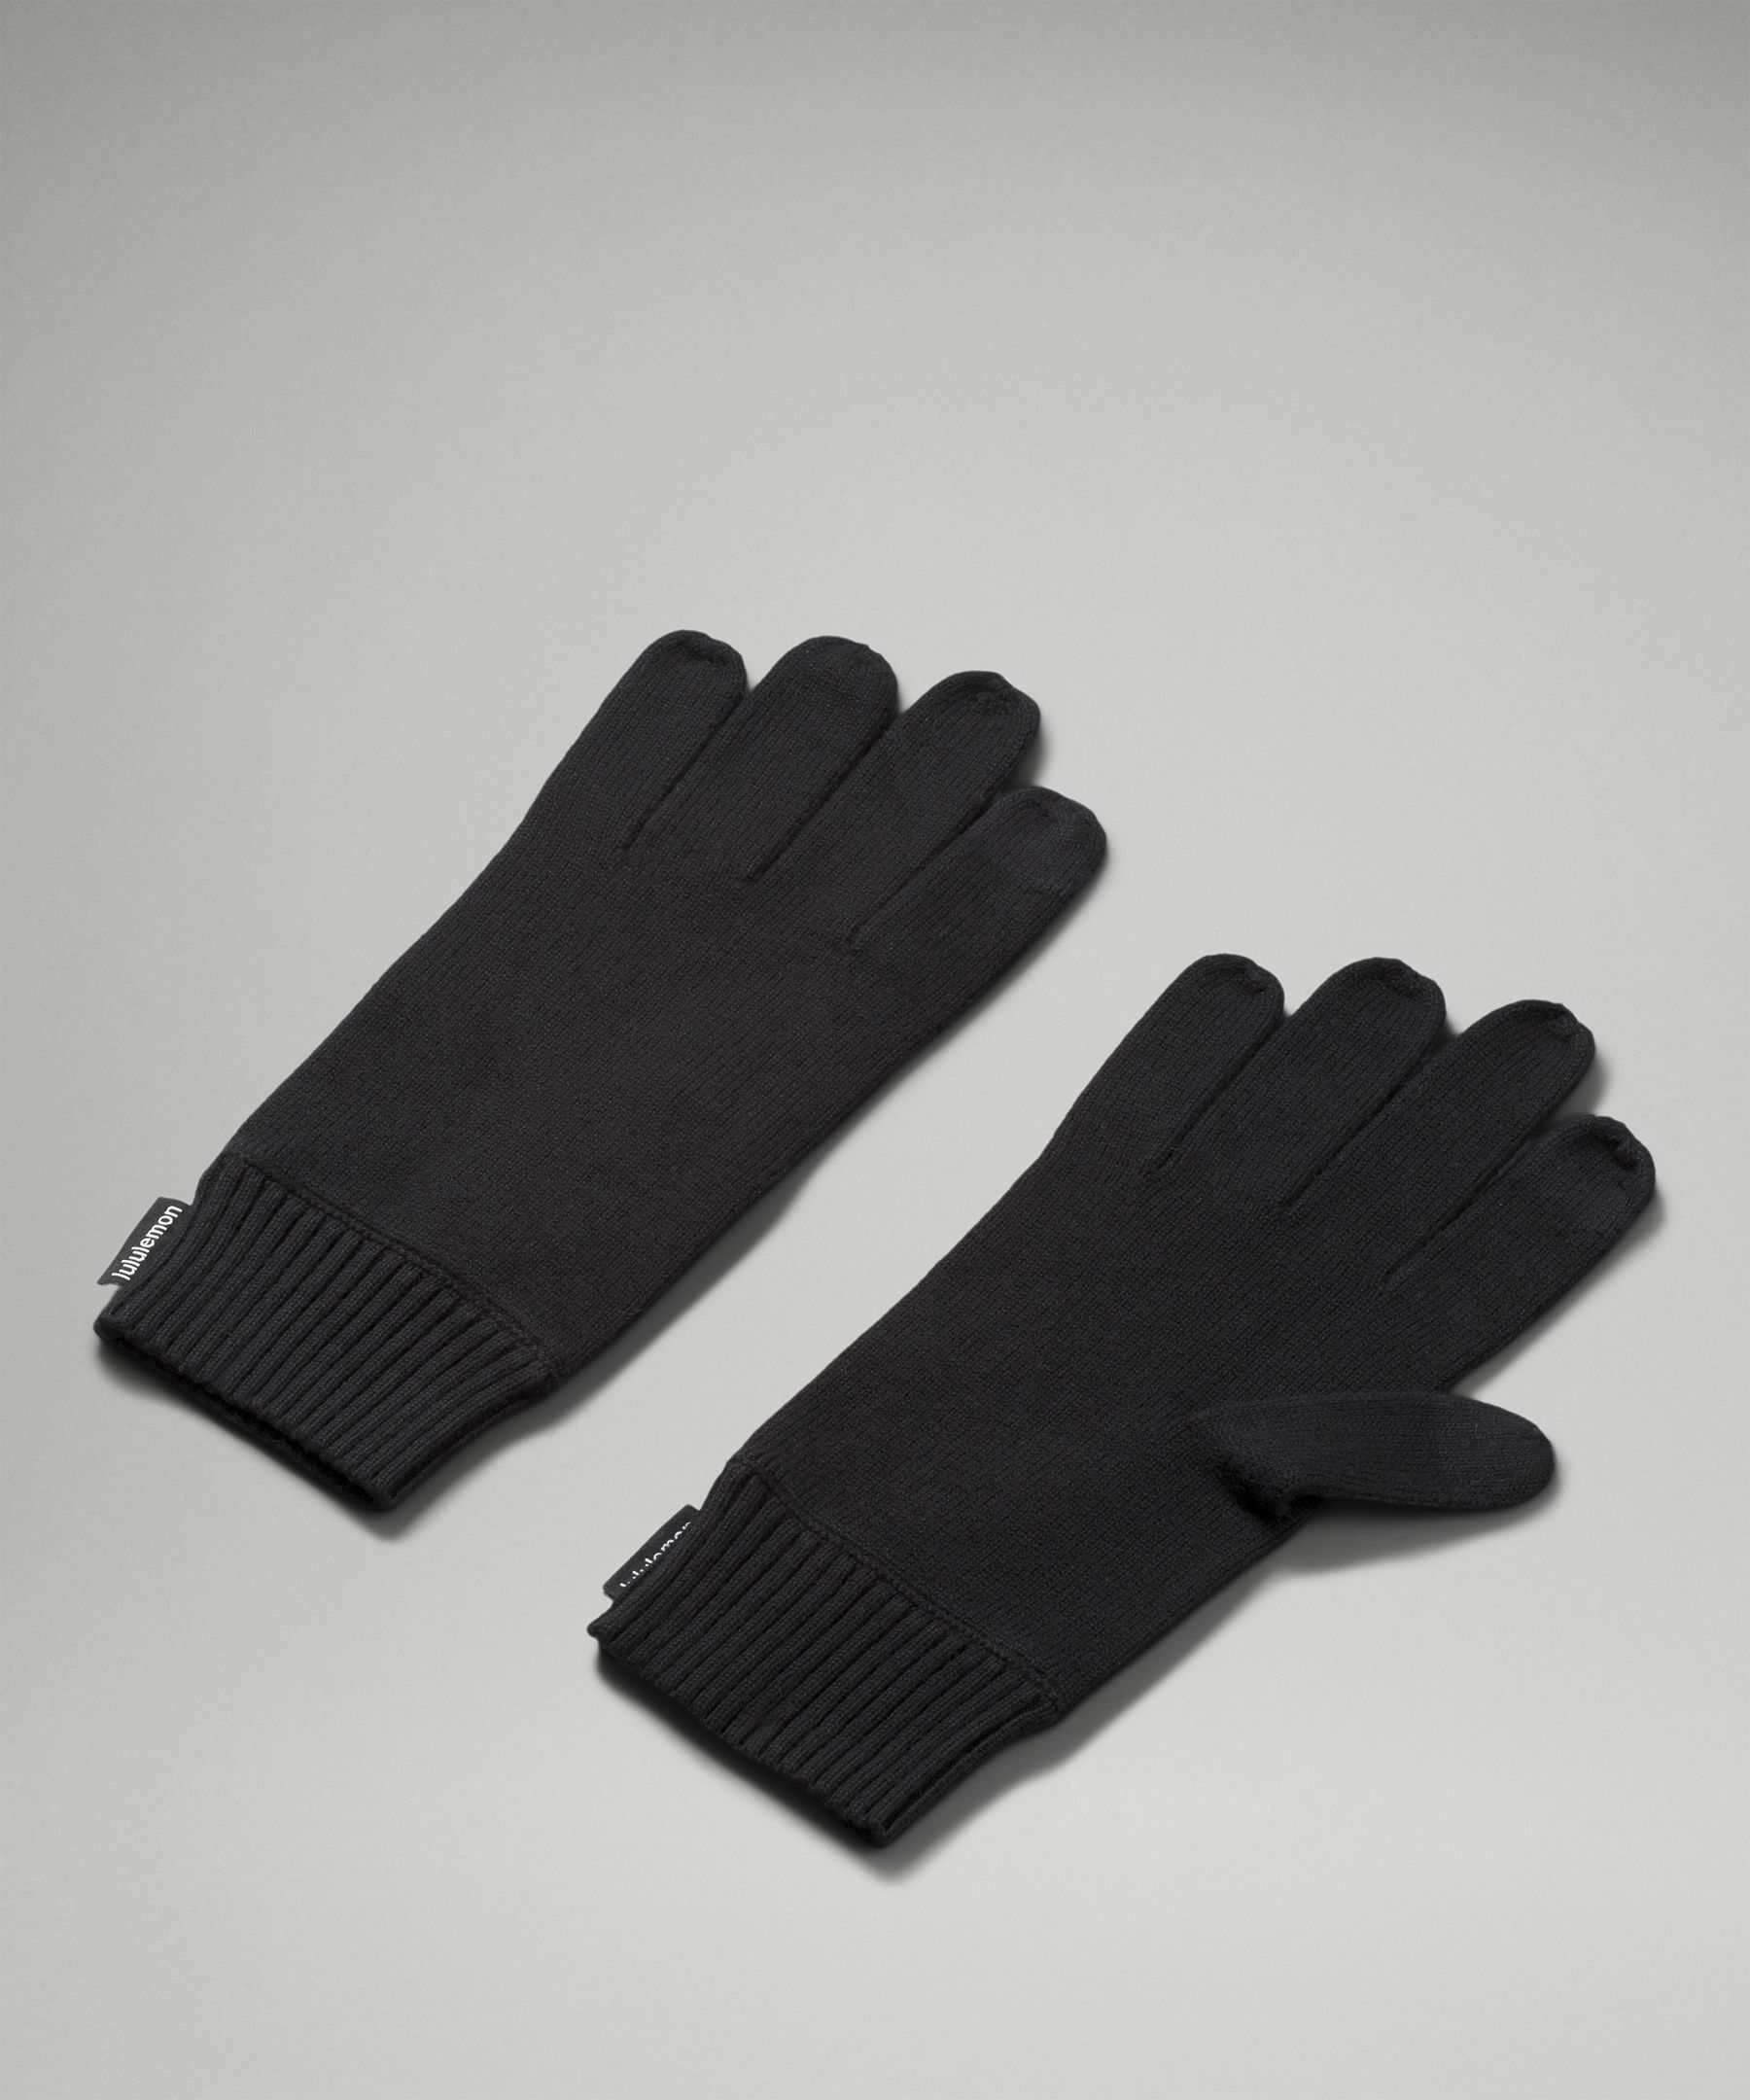 룰루레몬 Lululemon Mens Cold Pursuit Knit Gloves